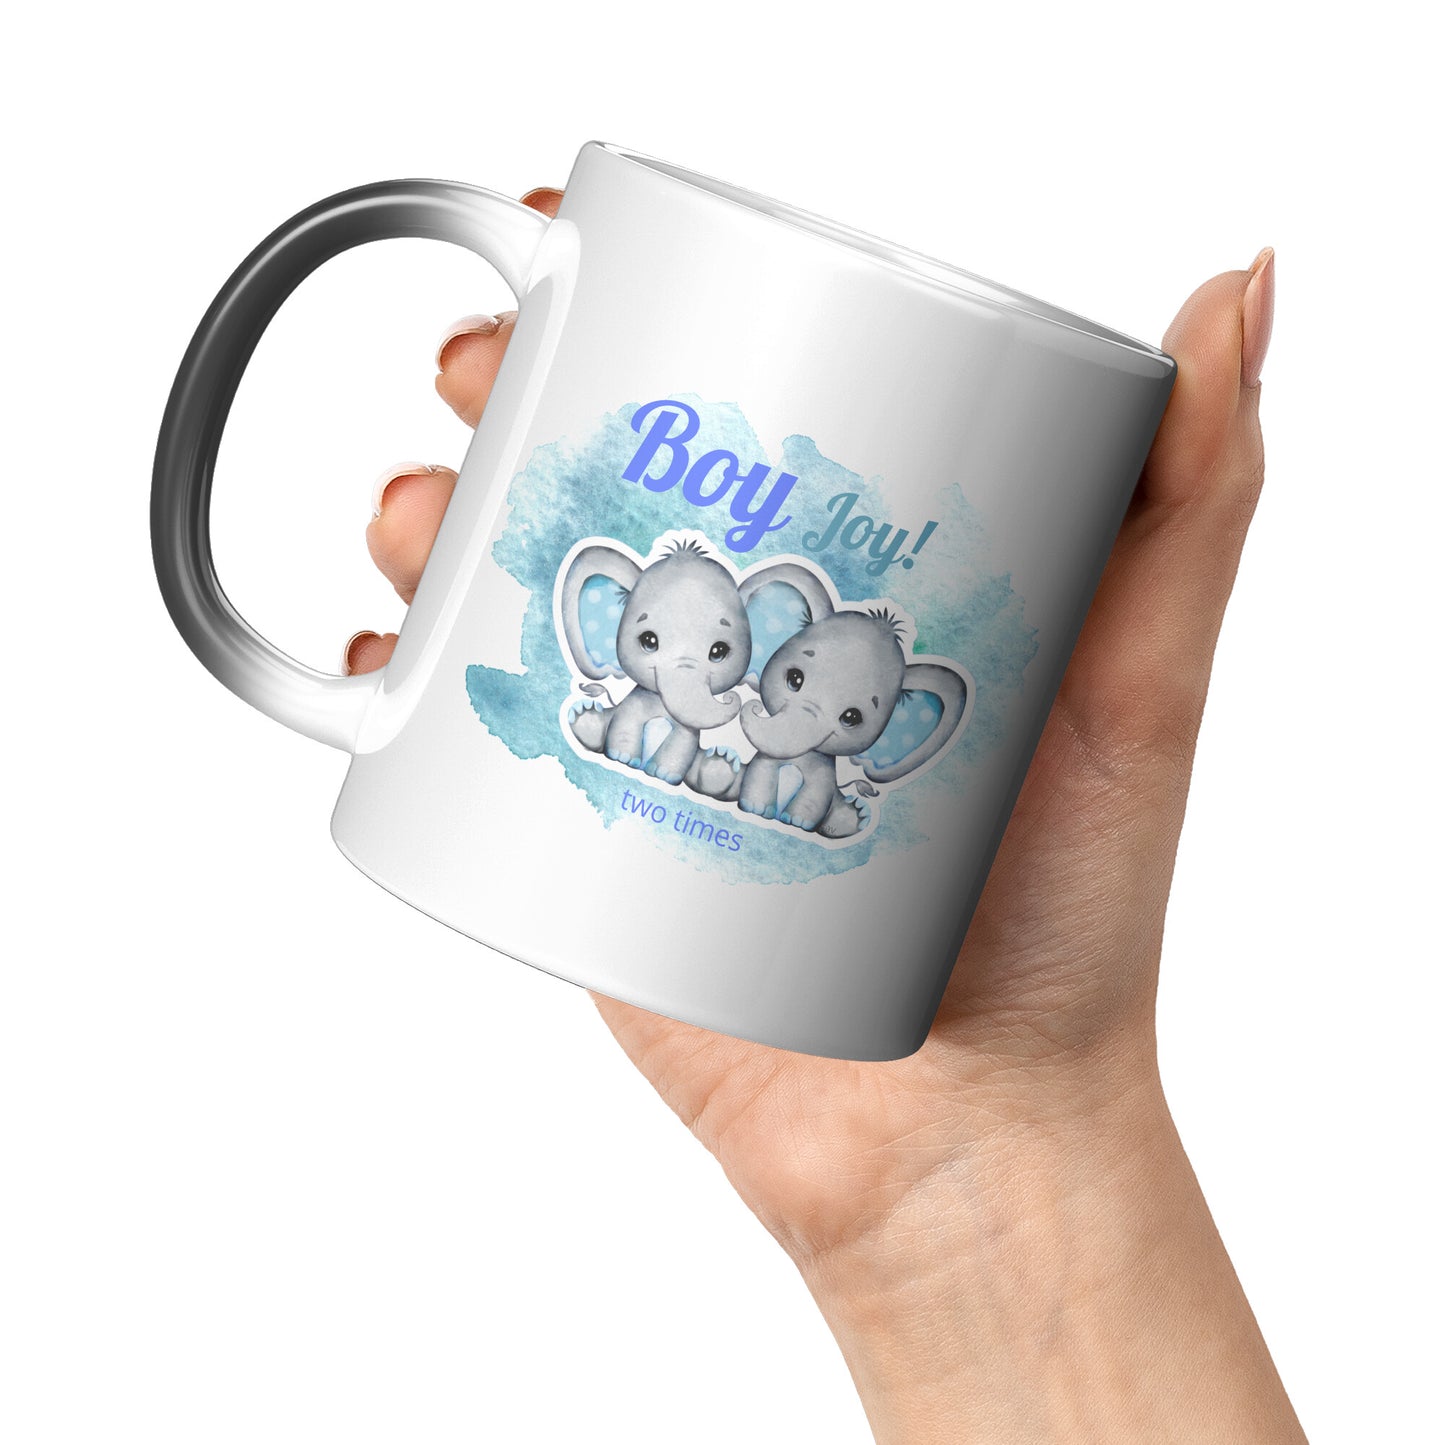 Twin Boys “Magic” Gender Reveal Mug • Boy Joy 2x Coffee Mug •  Twin Pregnancy Announcement Mug